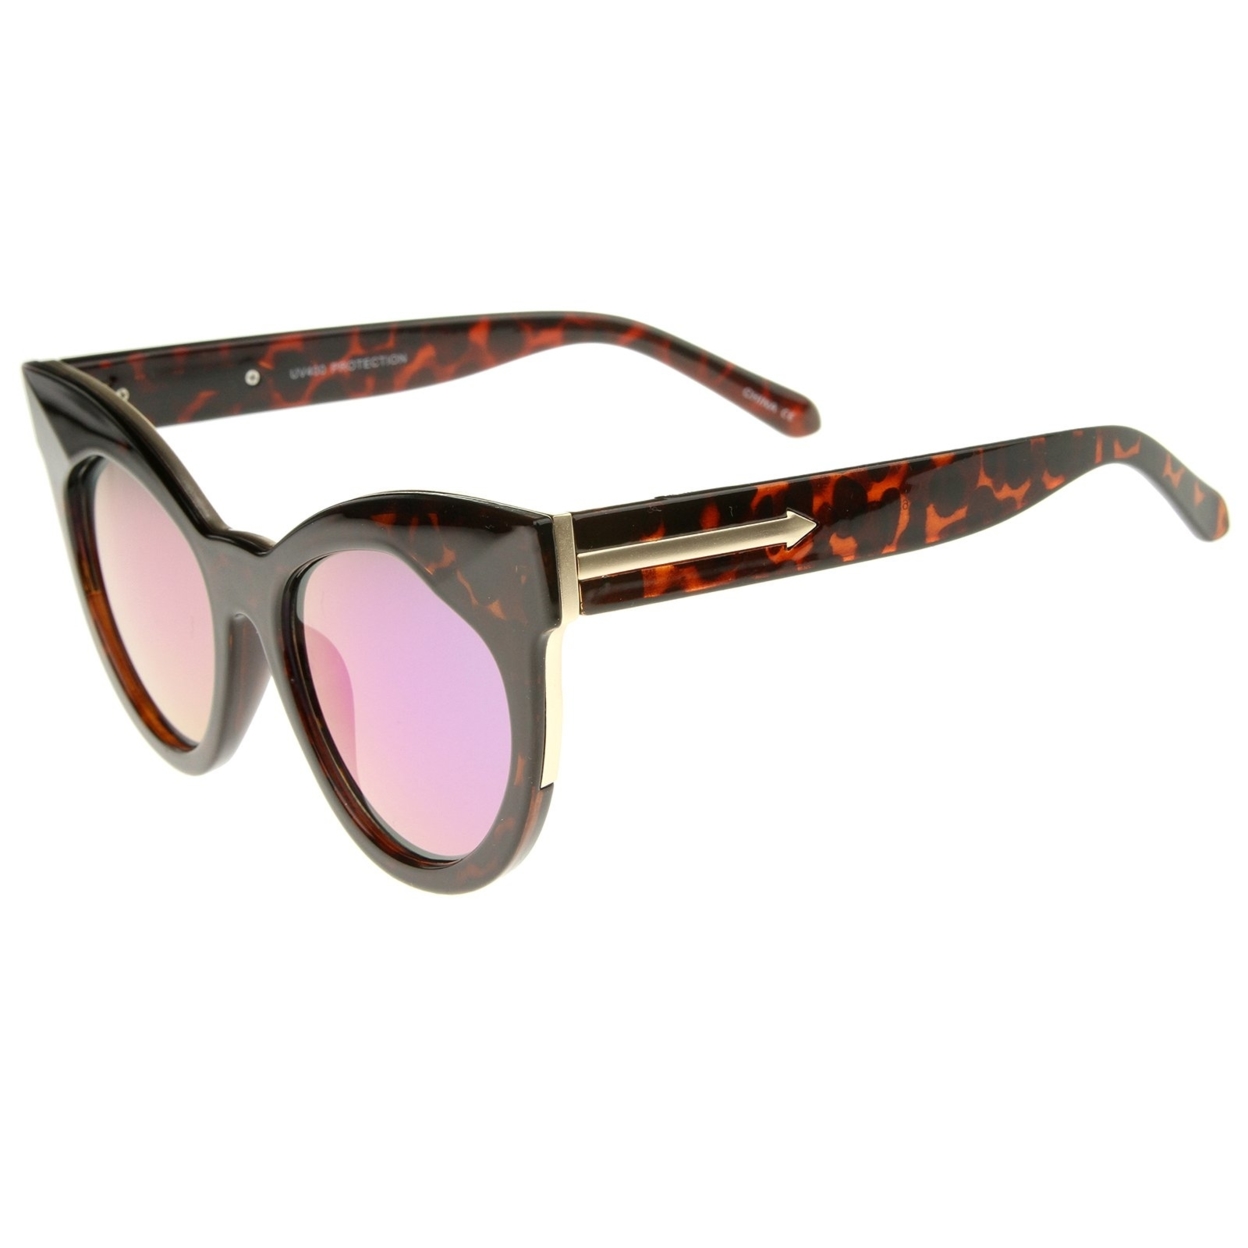 Women's Oversize Chunky Frame Iridescent Lens Cat Eye Sunglasses 55mm - Black / Silver Mirror